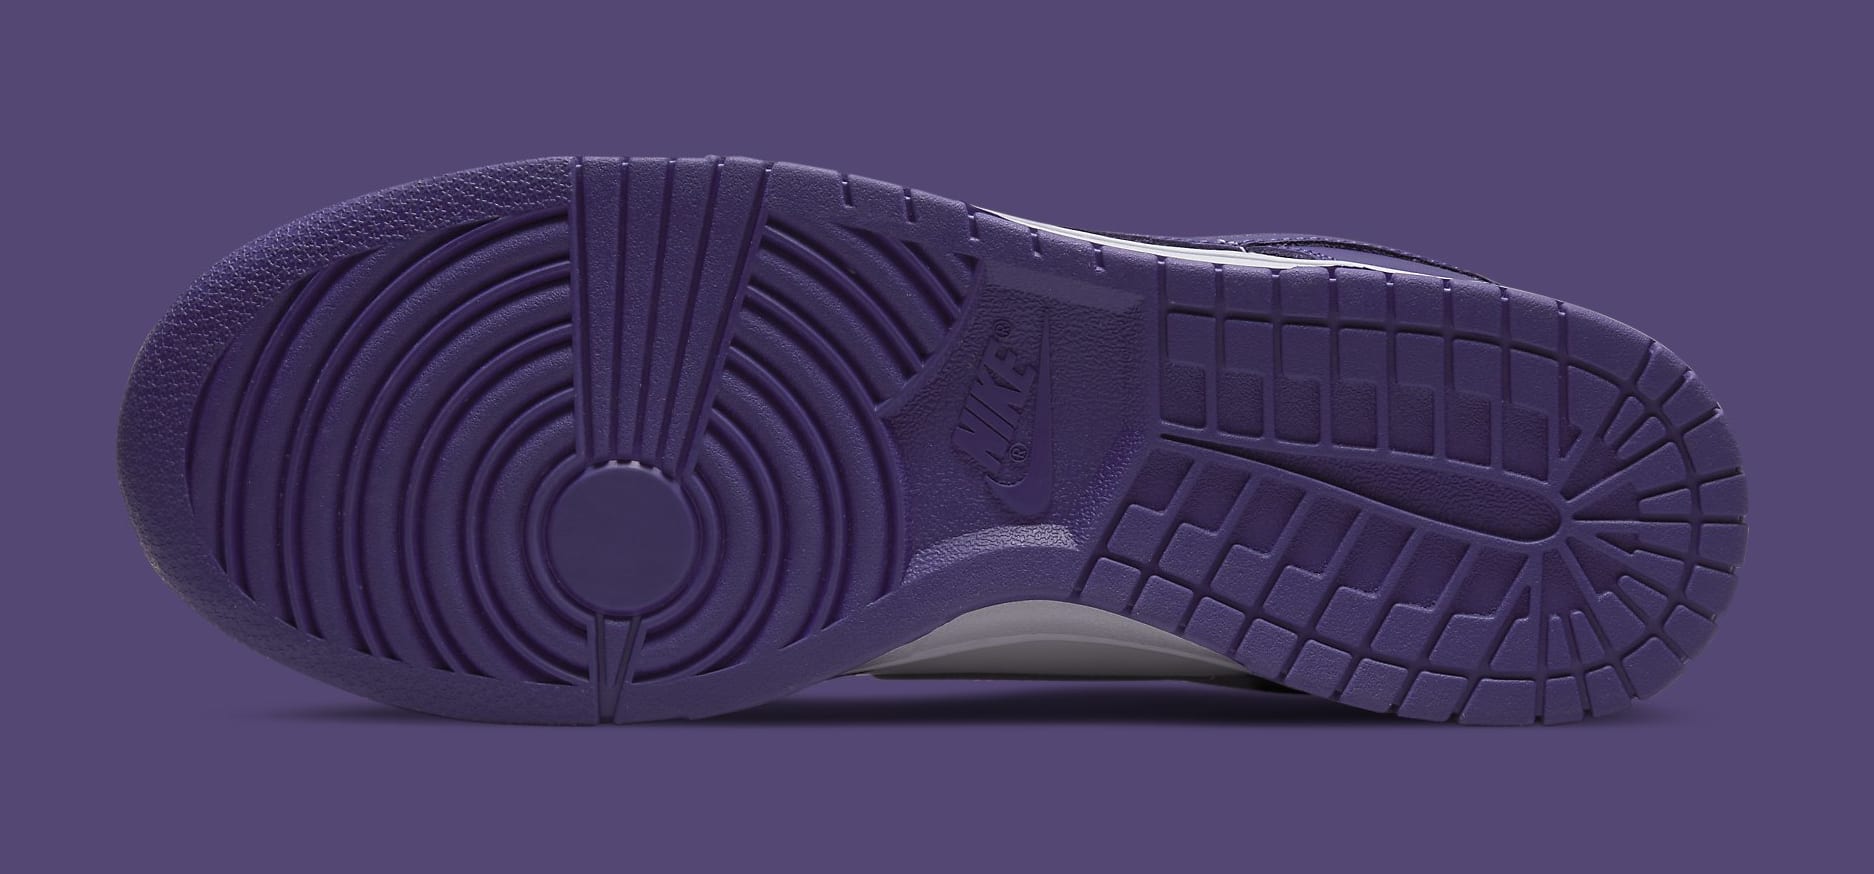 Lançamento Confirmado! Novo Nike Dunk Low Court Purple em 2022